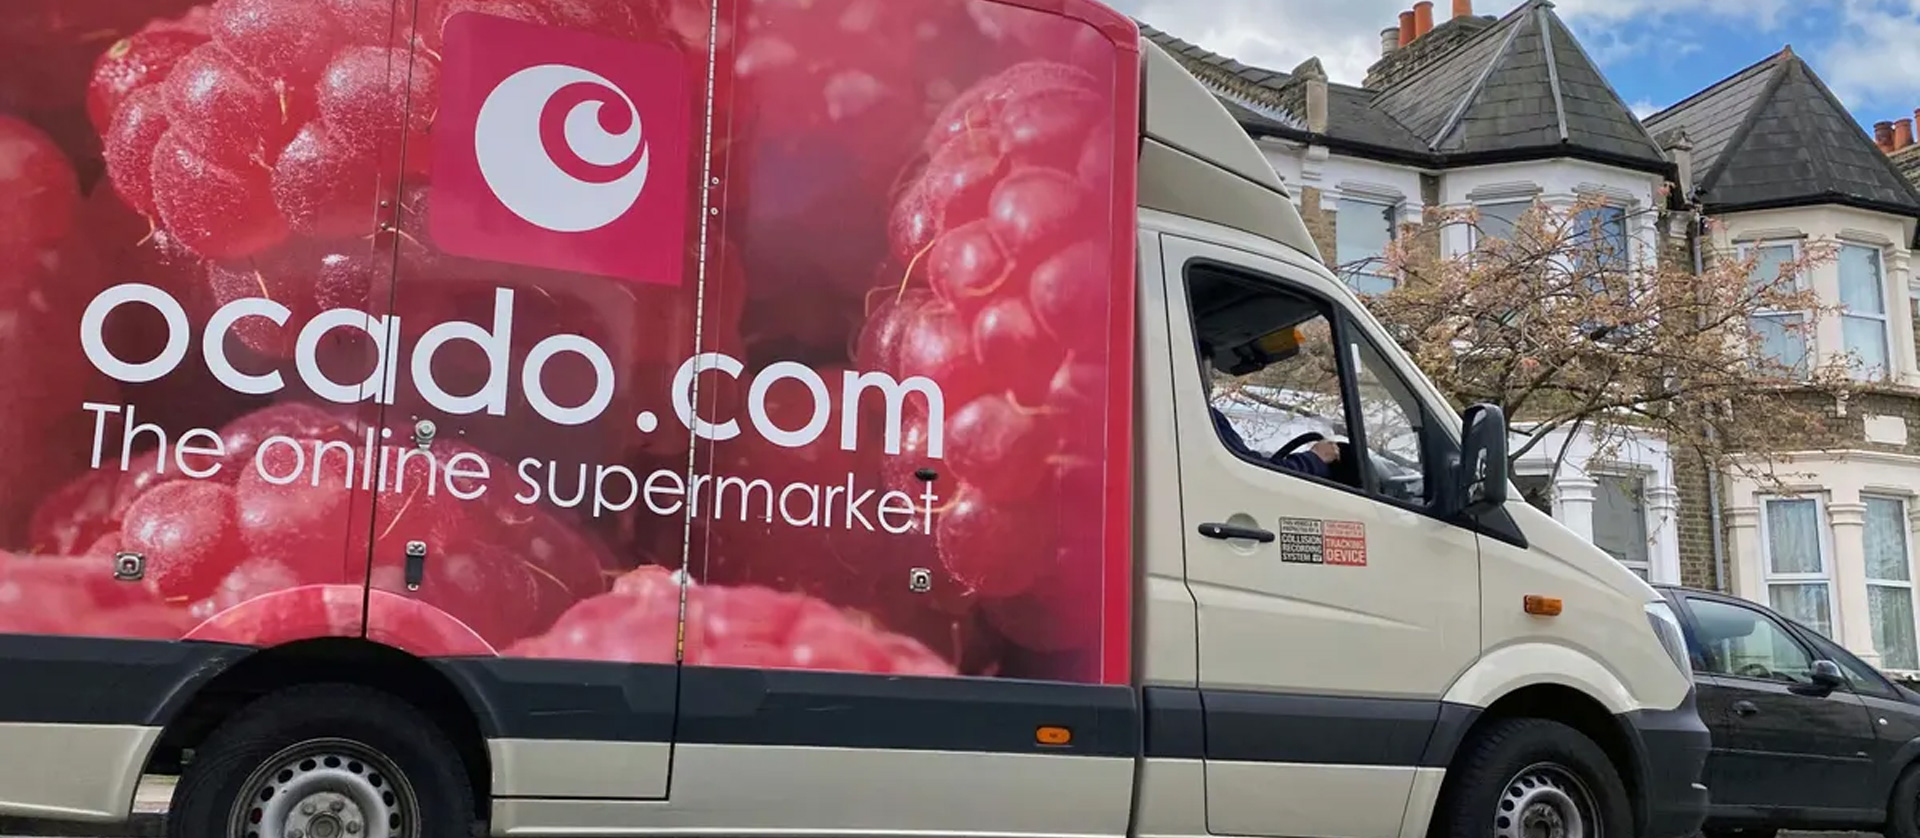 An image of an Ocado van delivering groceries